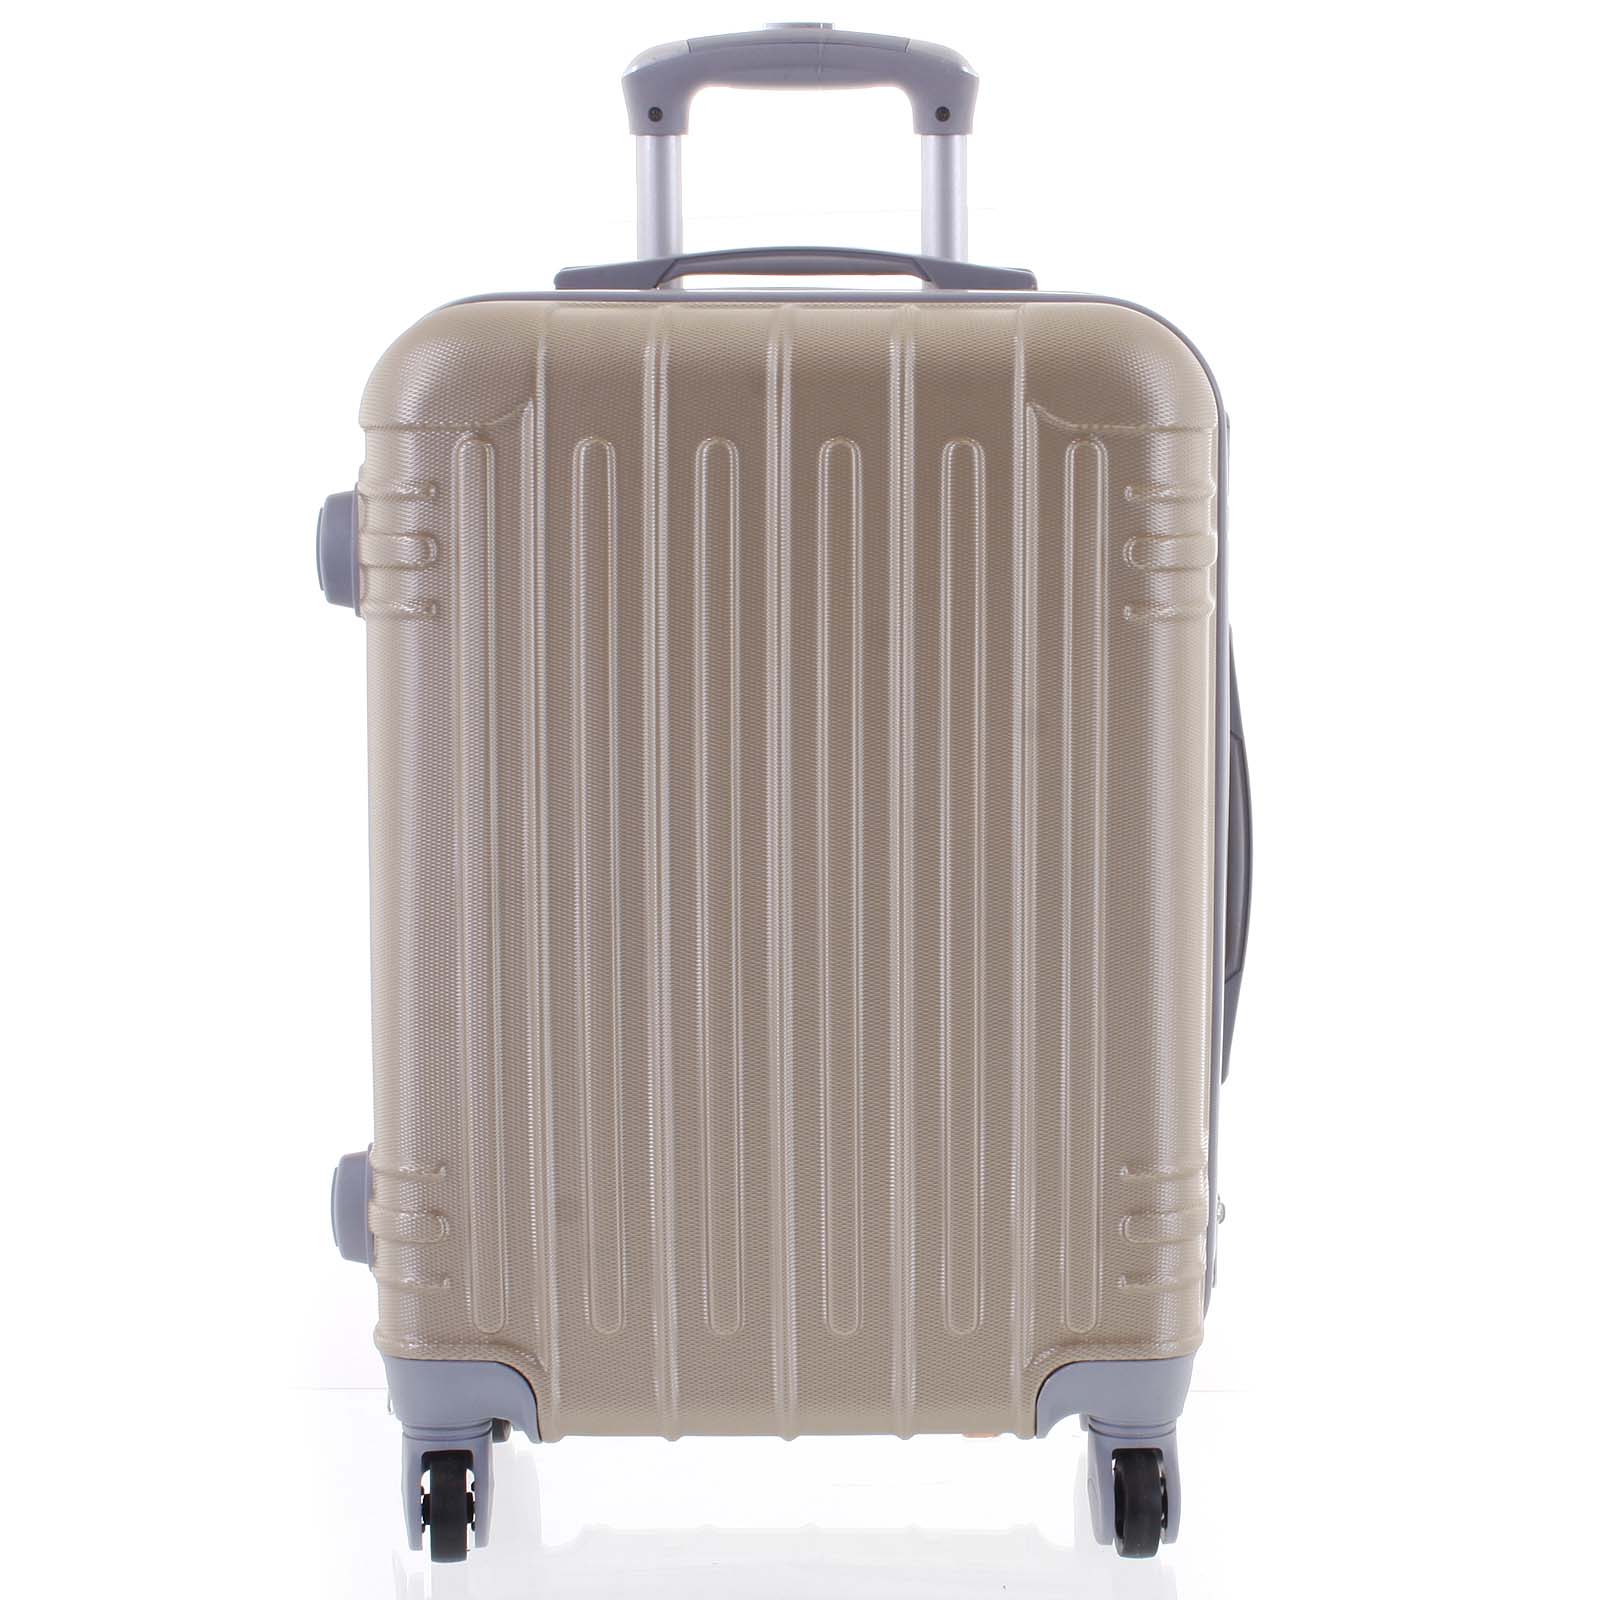 Moderní zlatý skořepinový cestovní kufr - Ormi Dopp M zlatá